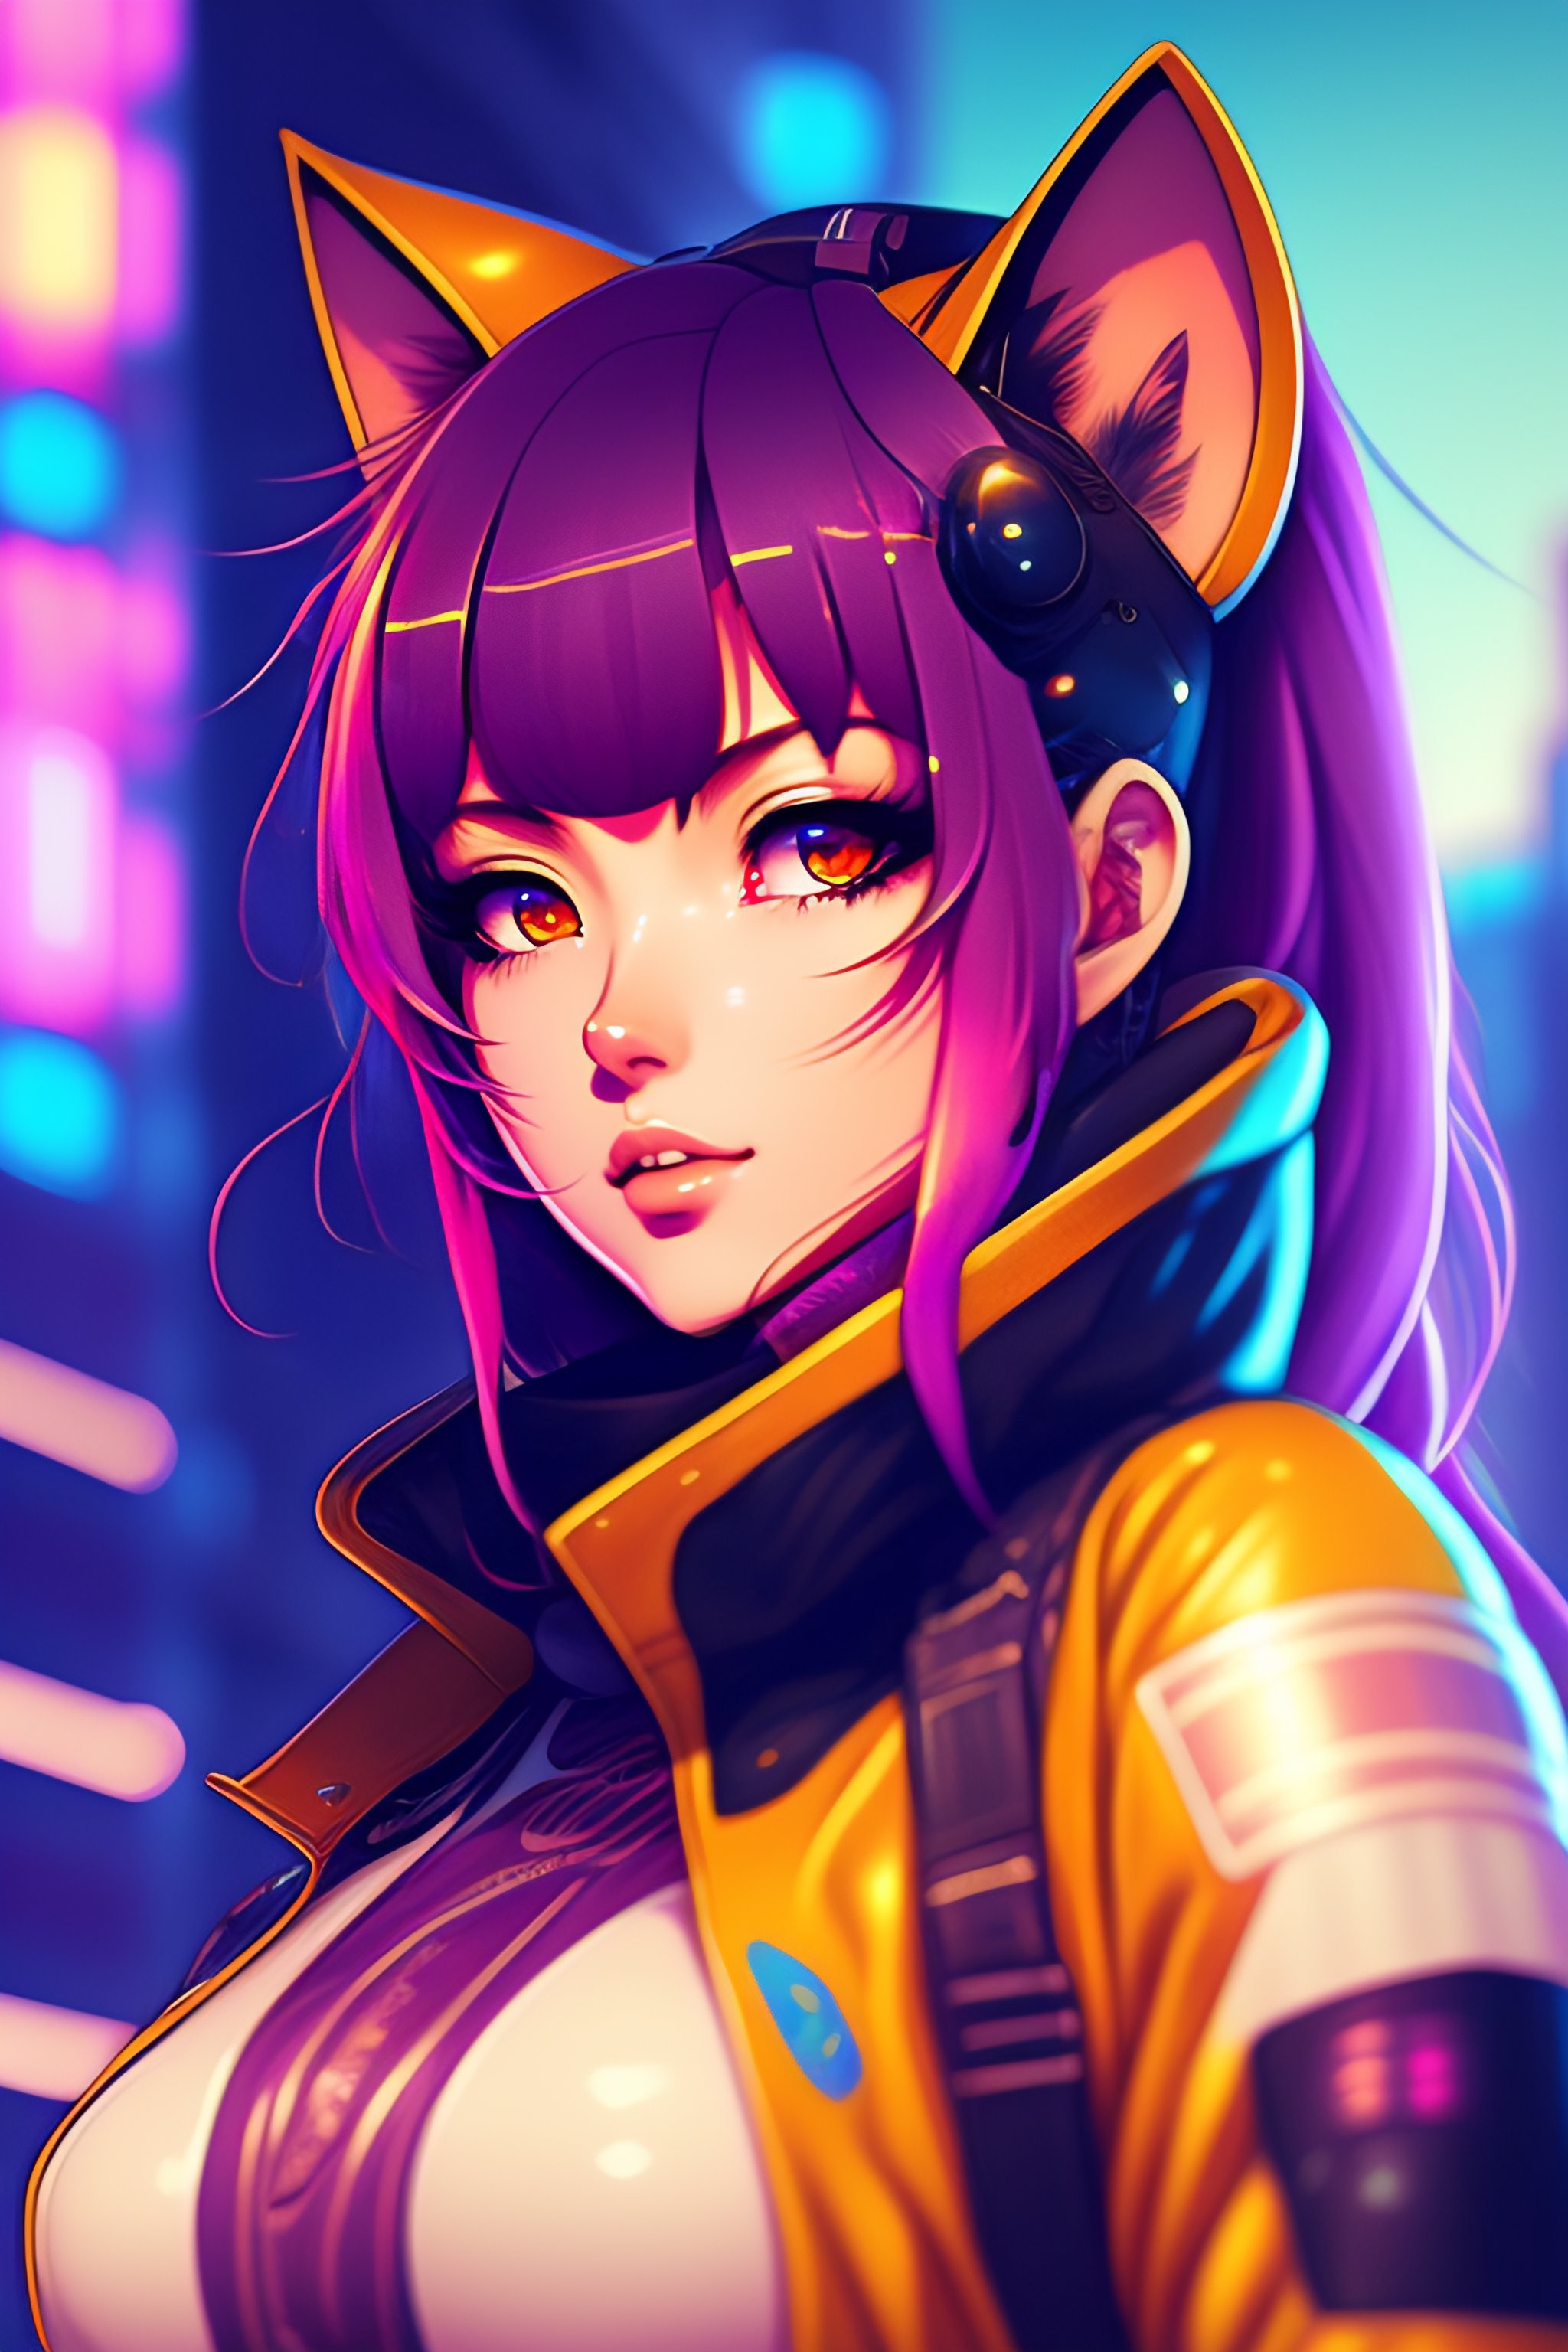 Lexica - Portrait of a Cute Anime Cyberpunk Cat Girl in a Retro Future ...